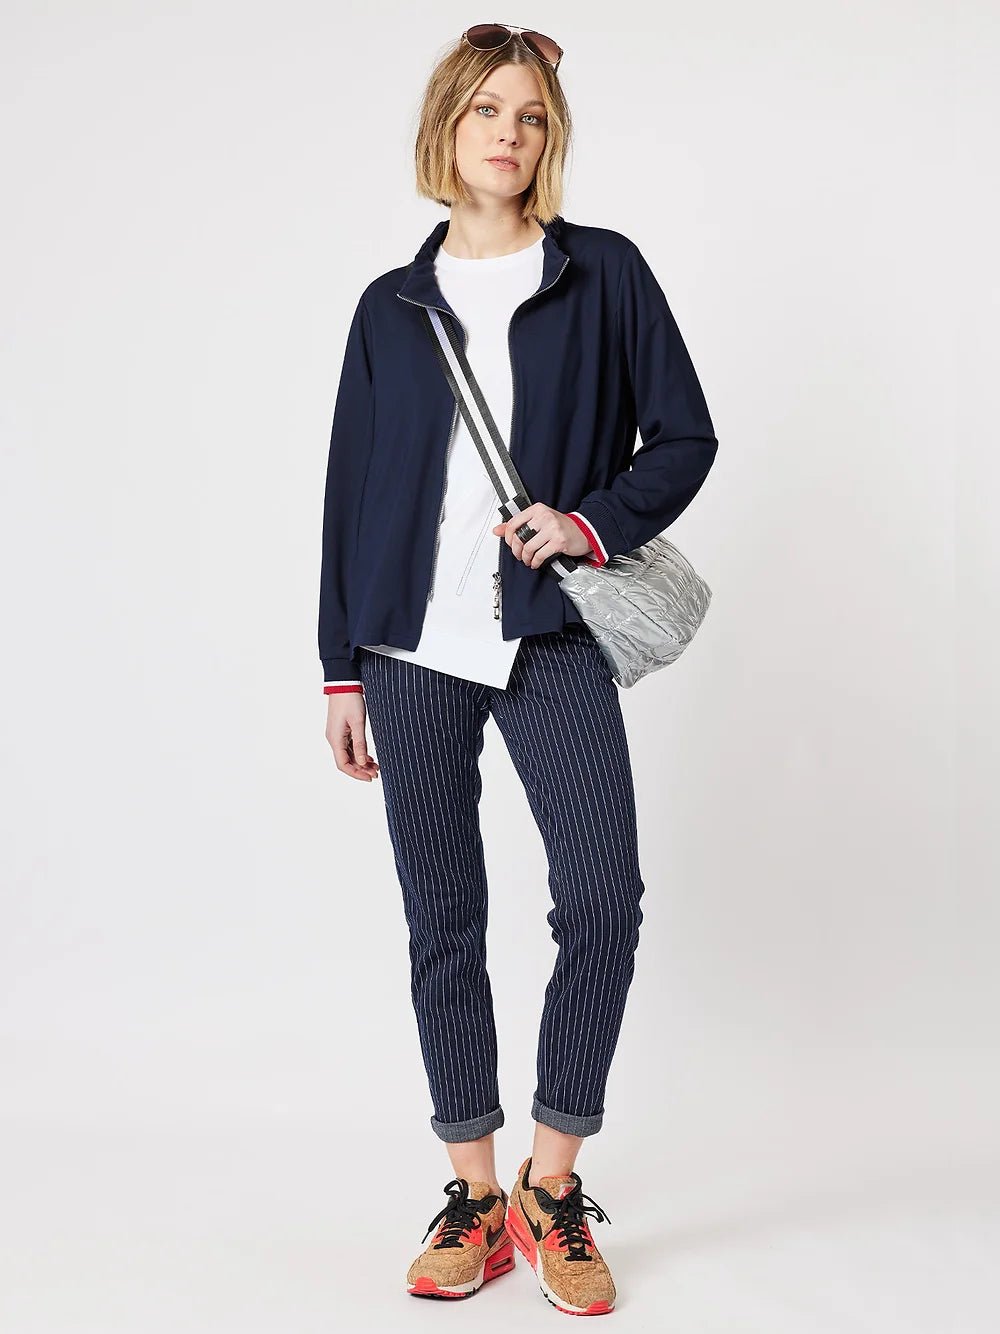 Shop Fuchi Jacket in Navy - Clarity